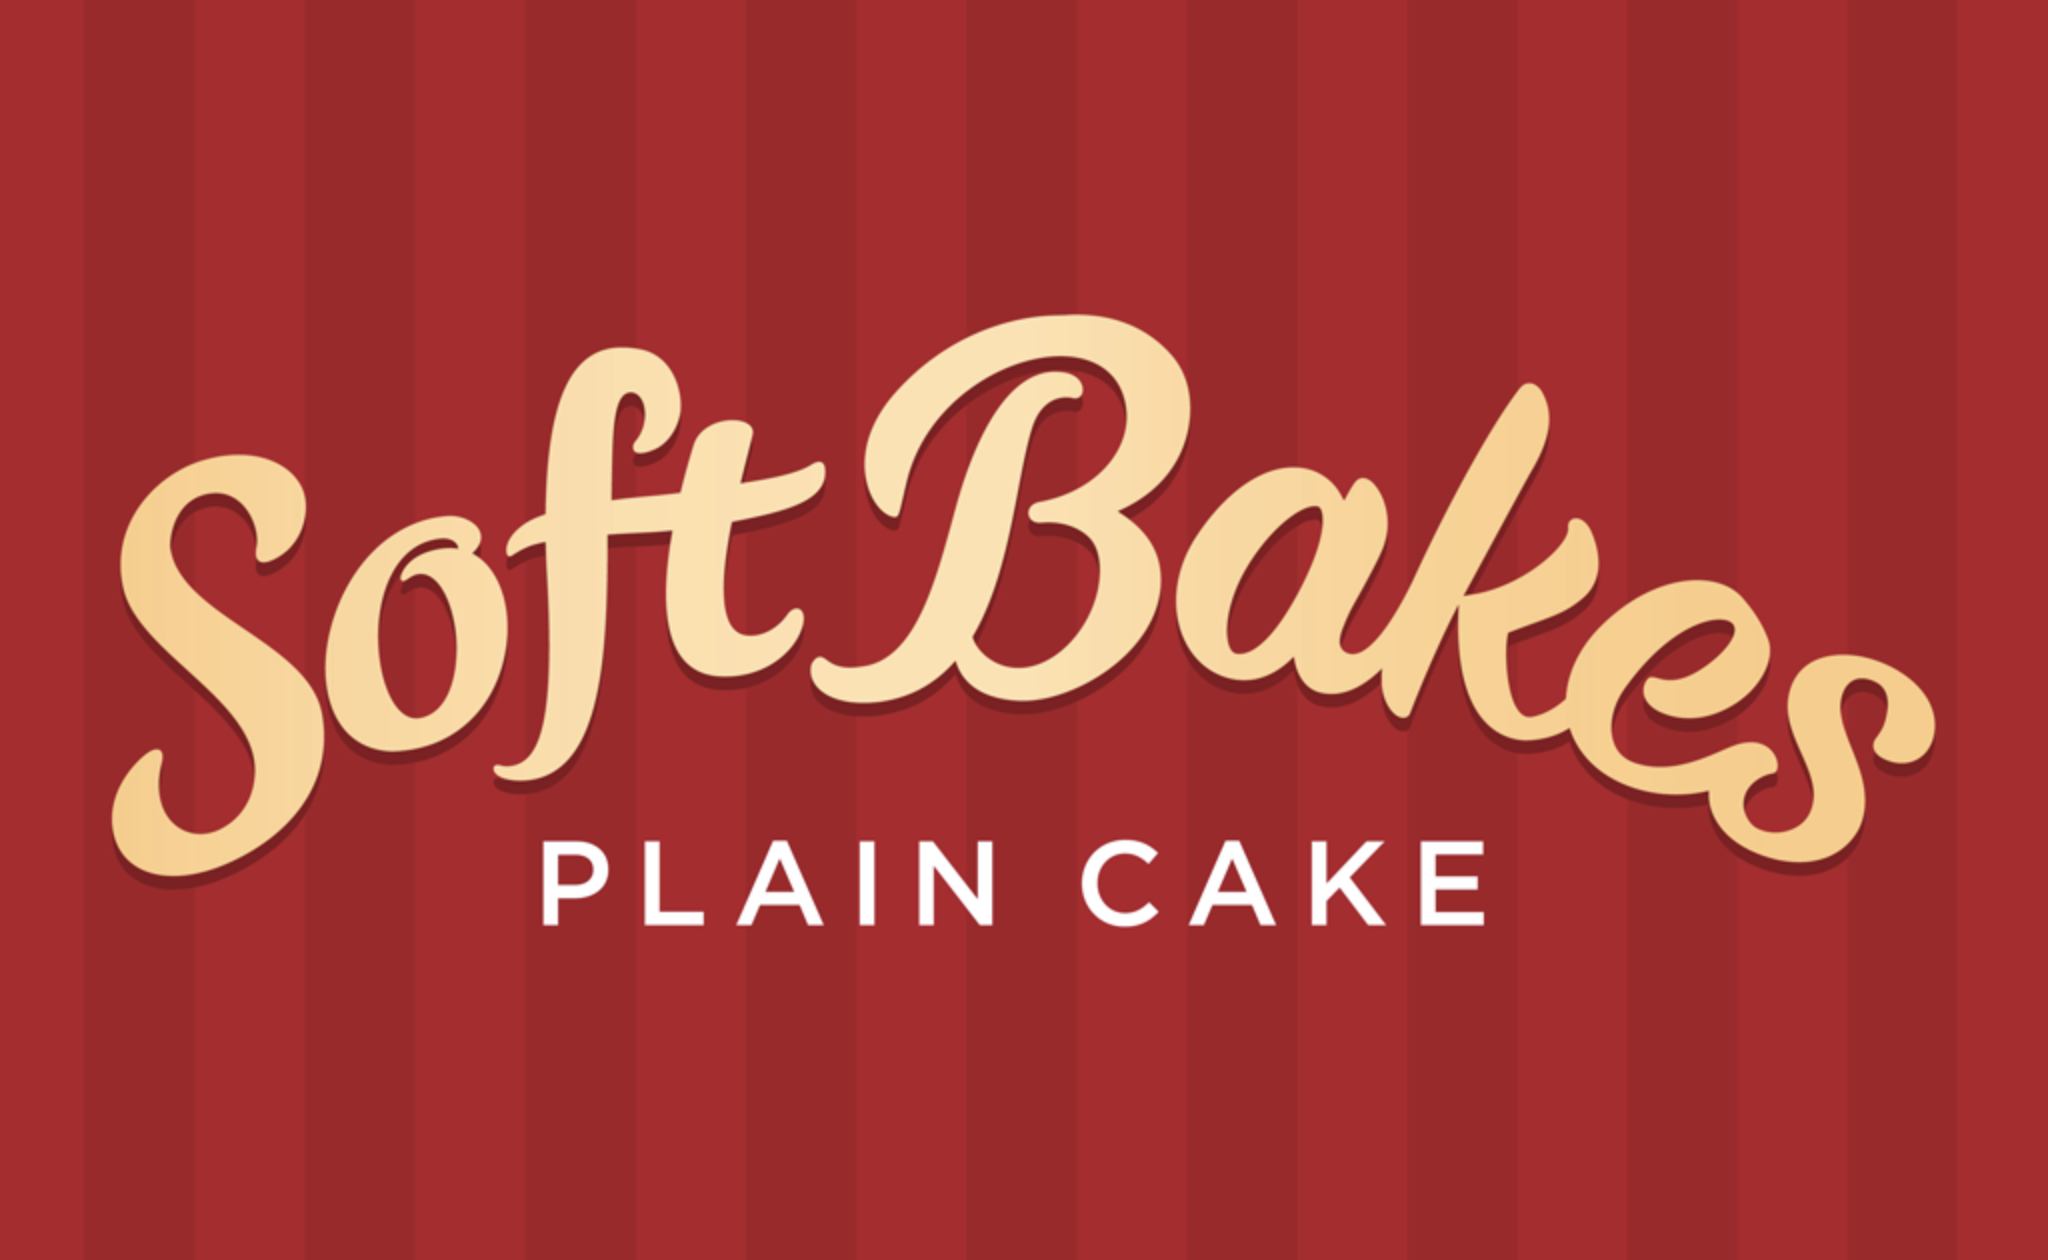 品牌设计公司为饼干制造商EBM的一种新的软烤蛋糕设计了logo设计和品牌包装设计